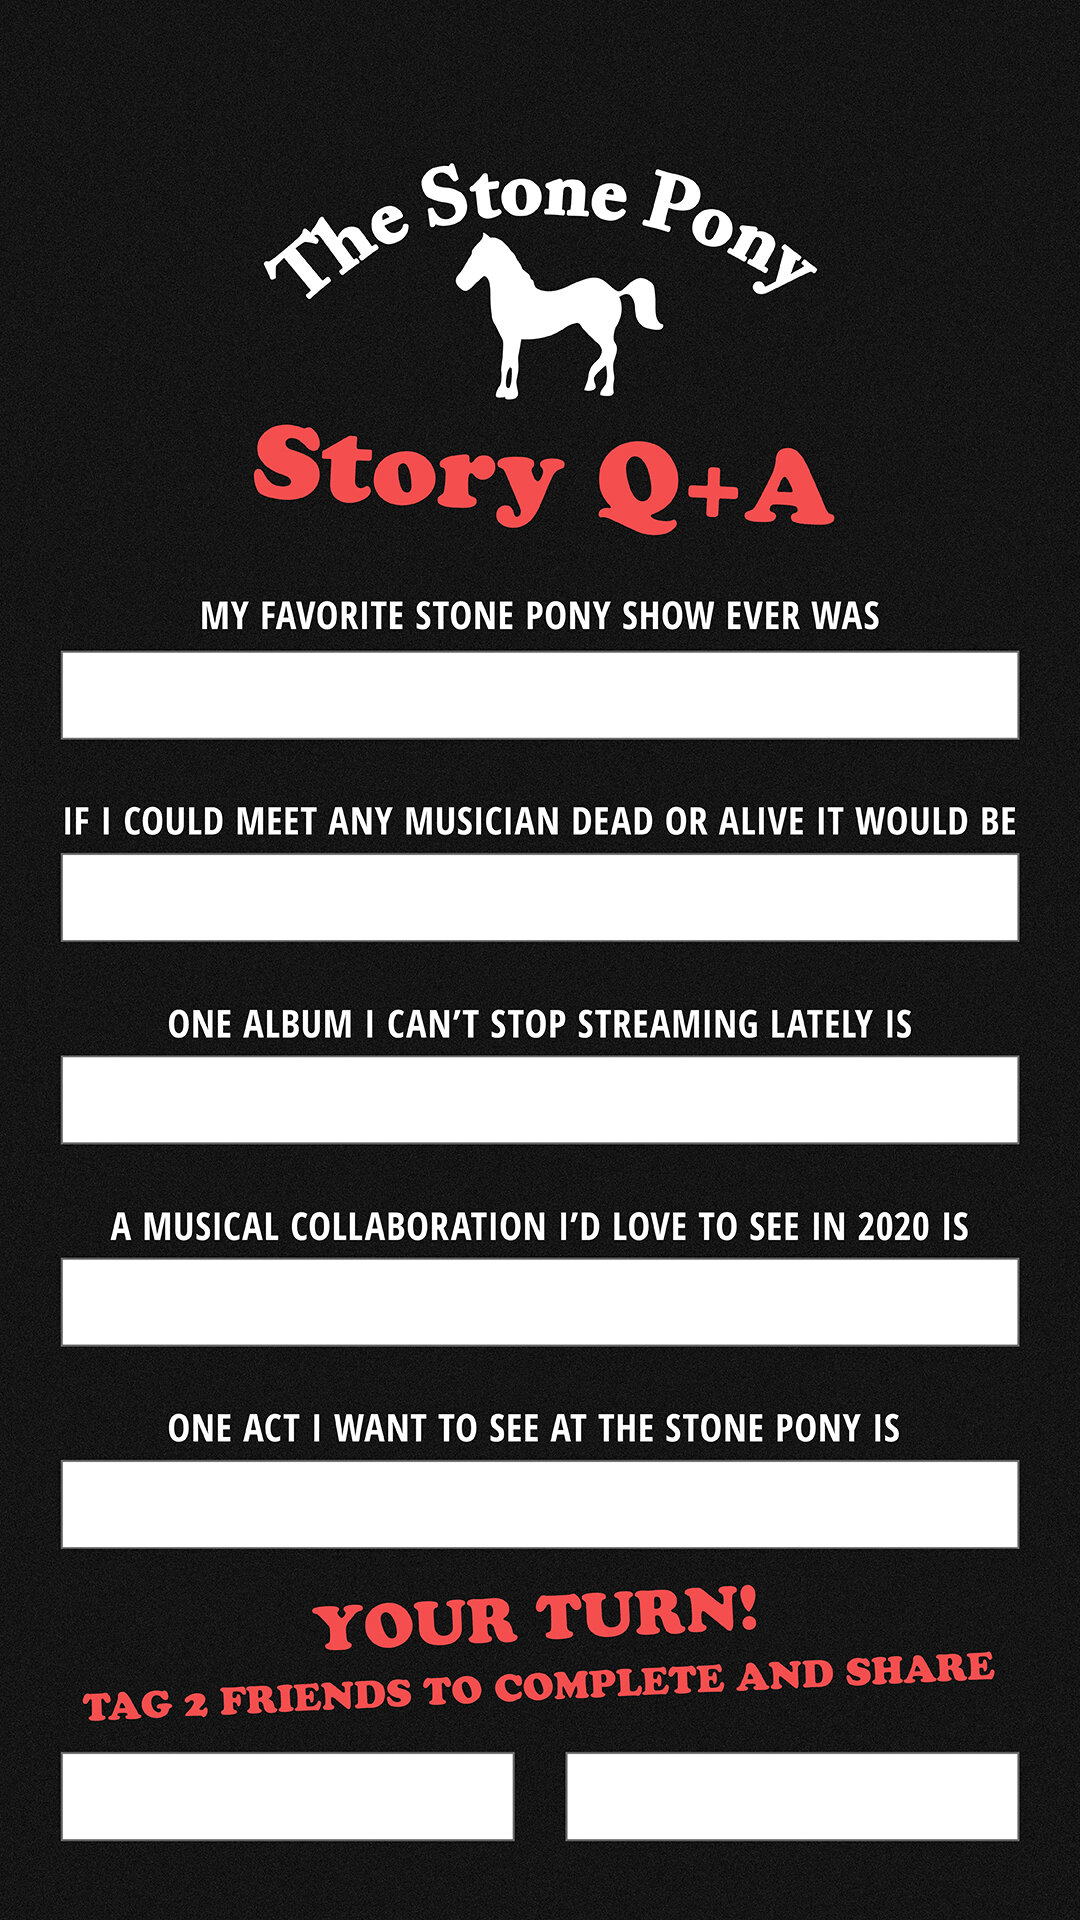 StonePony_StoryTemplates_QA.jpg